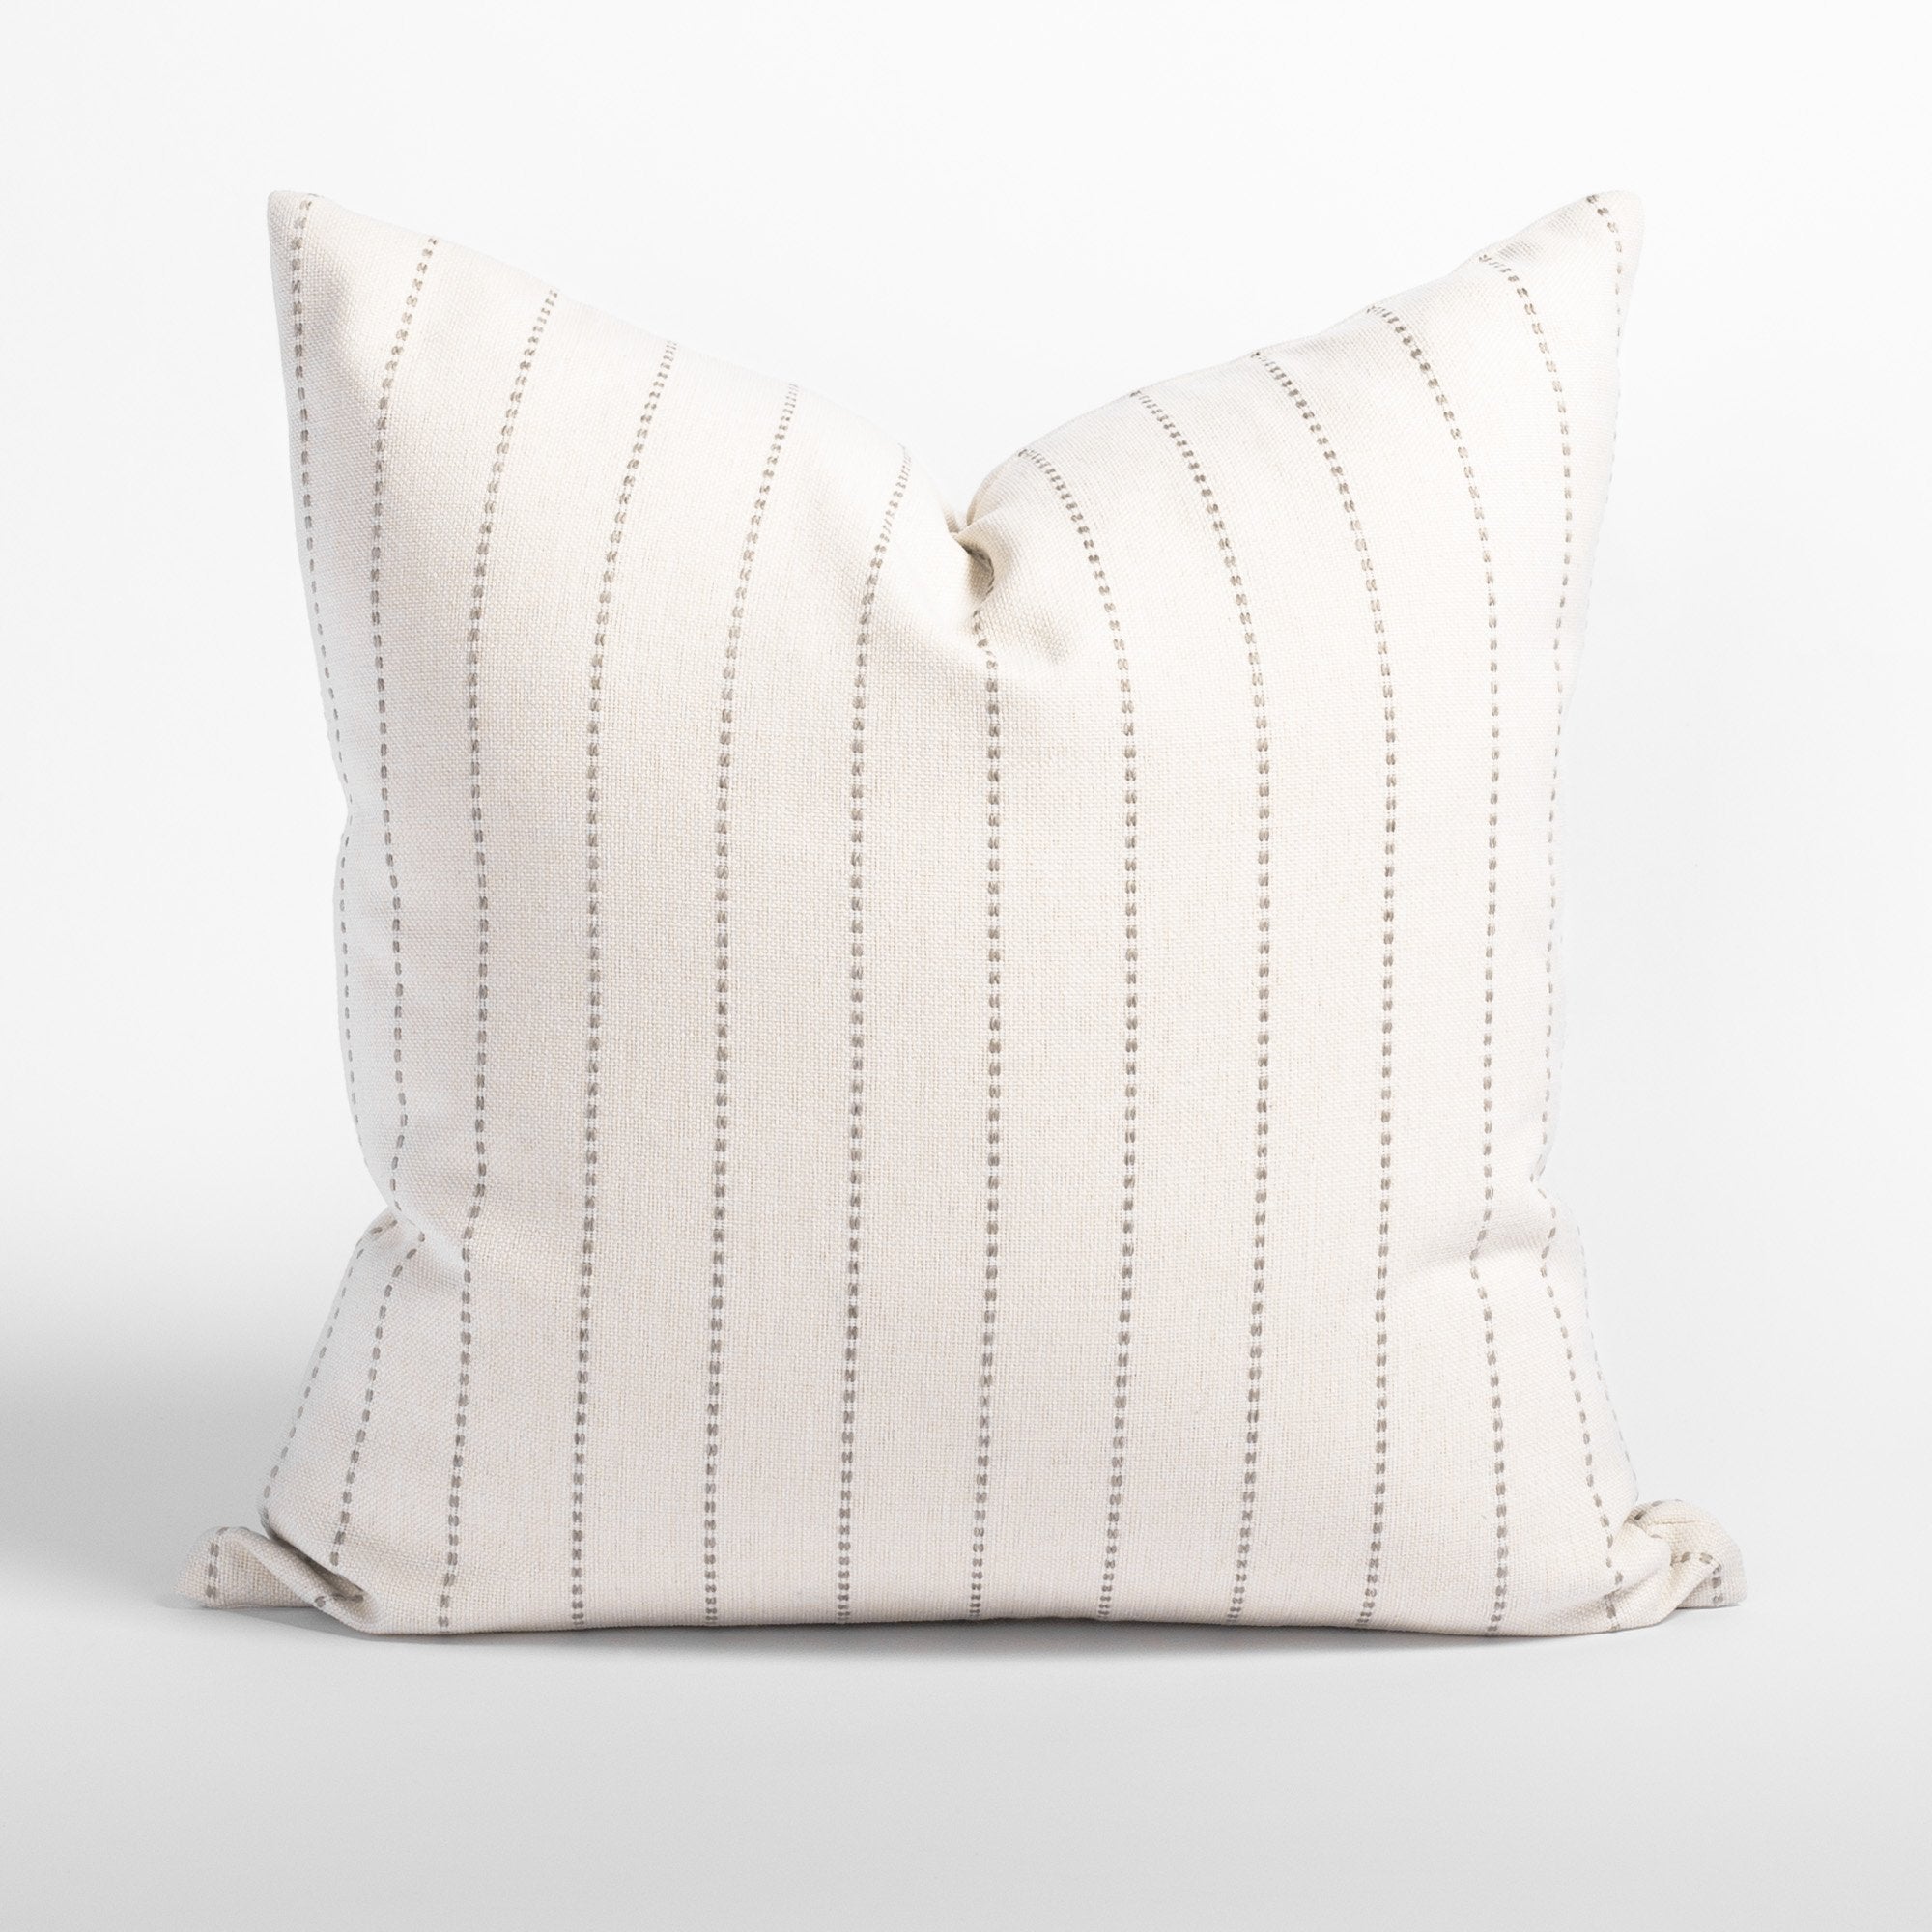 Fontana 20x20 pillow, a cream and sandy gray vertical stripe pillow